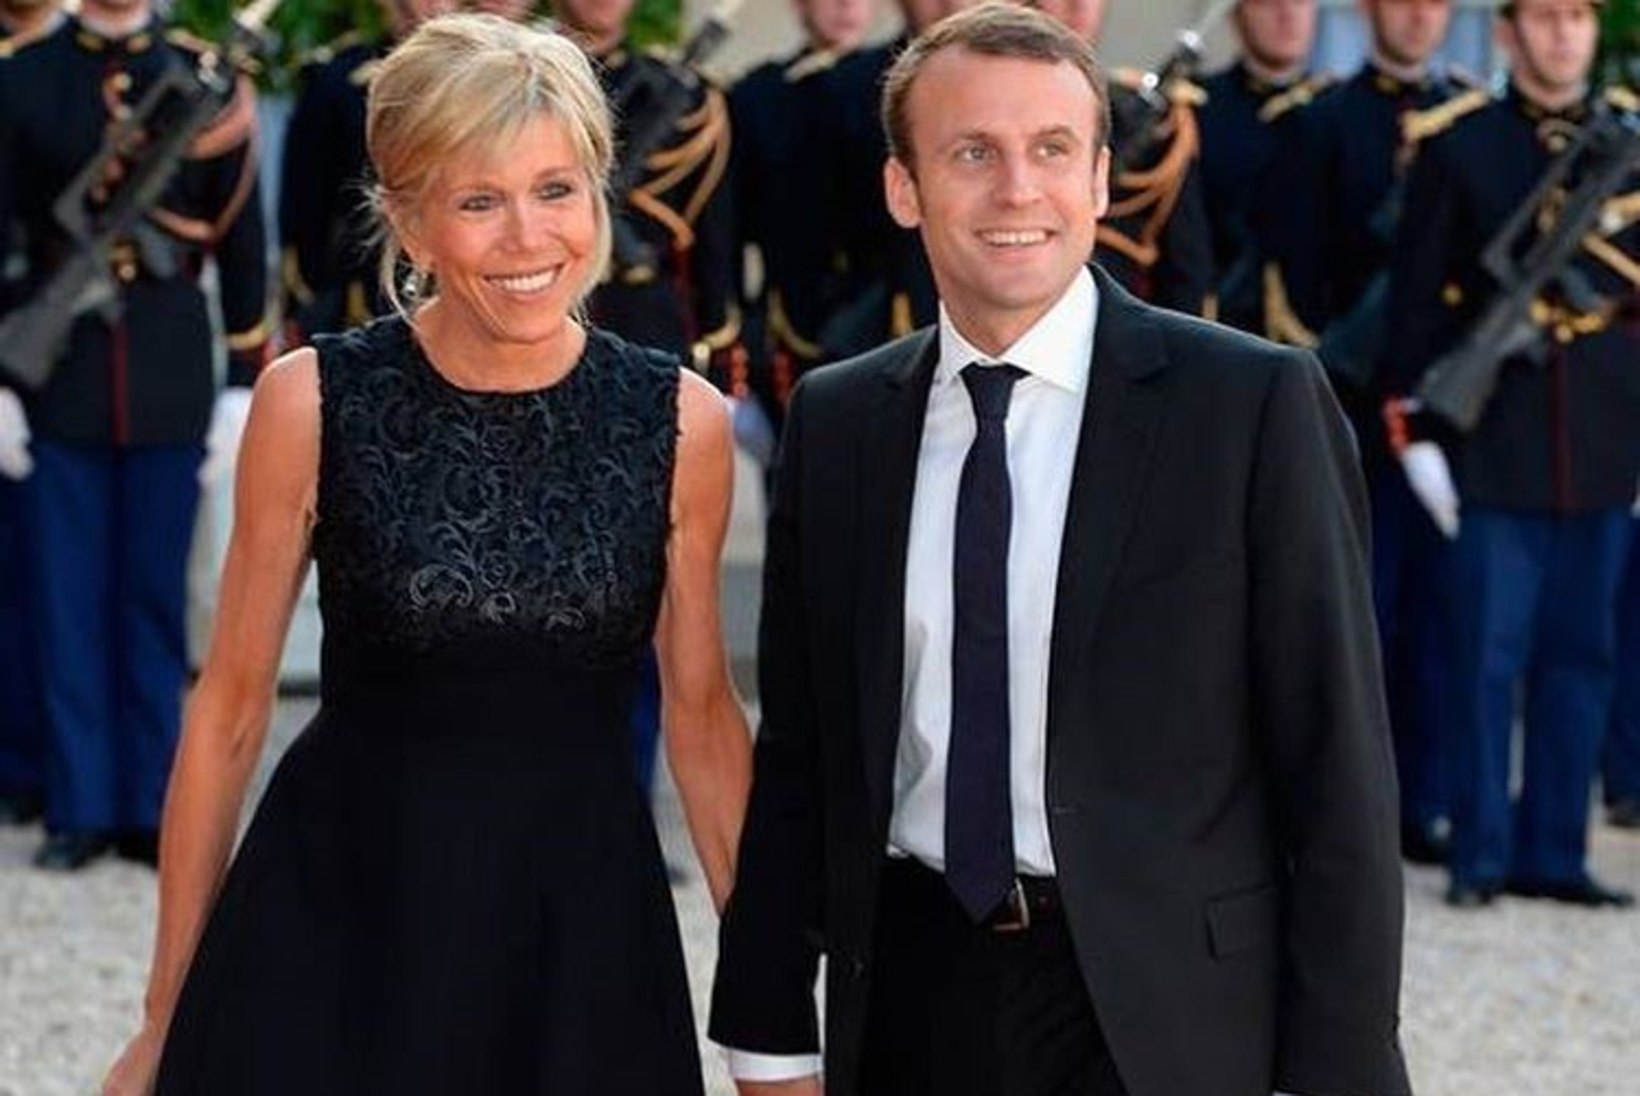 Kas imestate, et Prantsusmaa vast valitud presidendil on nii kuum naine? Pariislannad teavad, kuidas ka 60ndates eriti hea välja näha! 